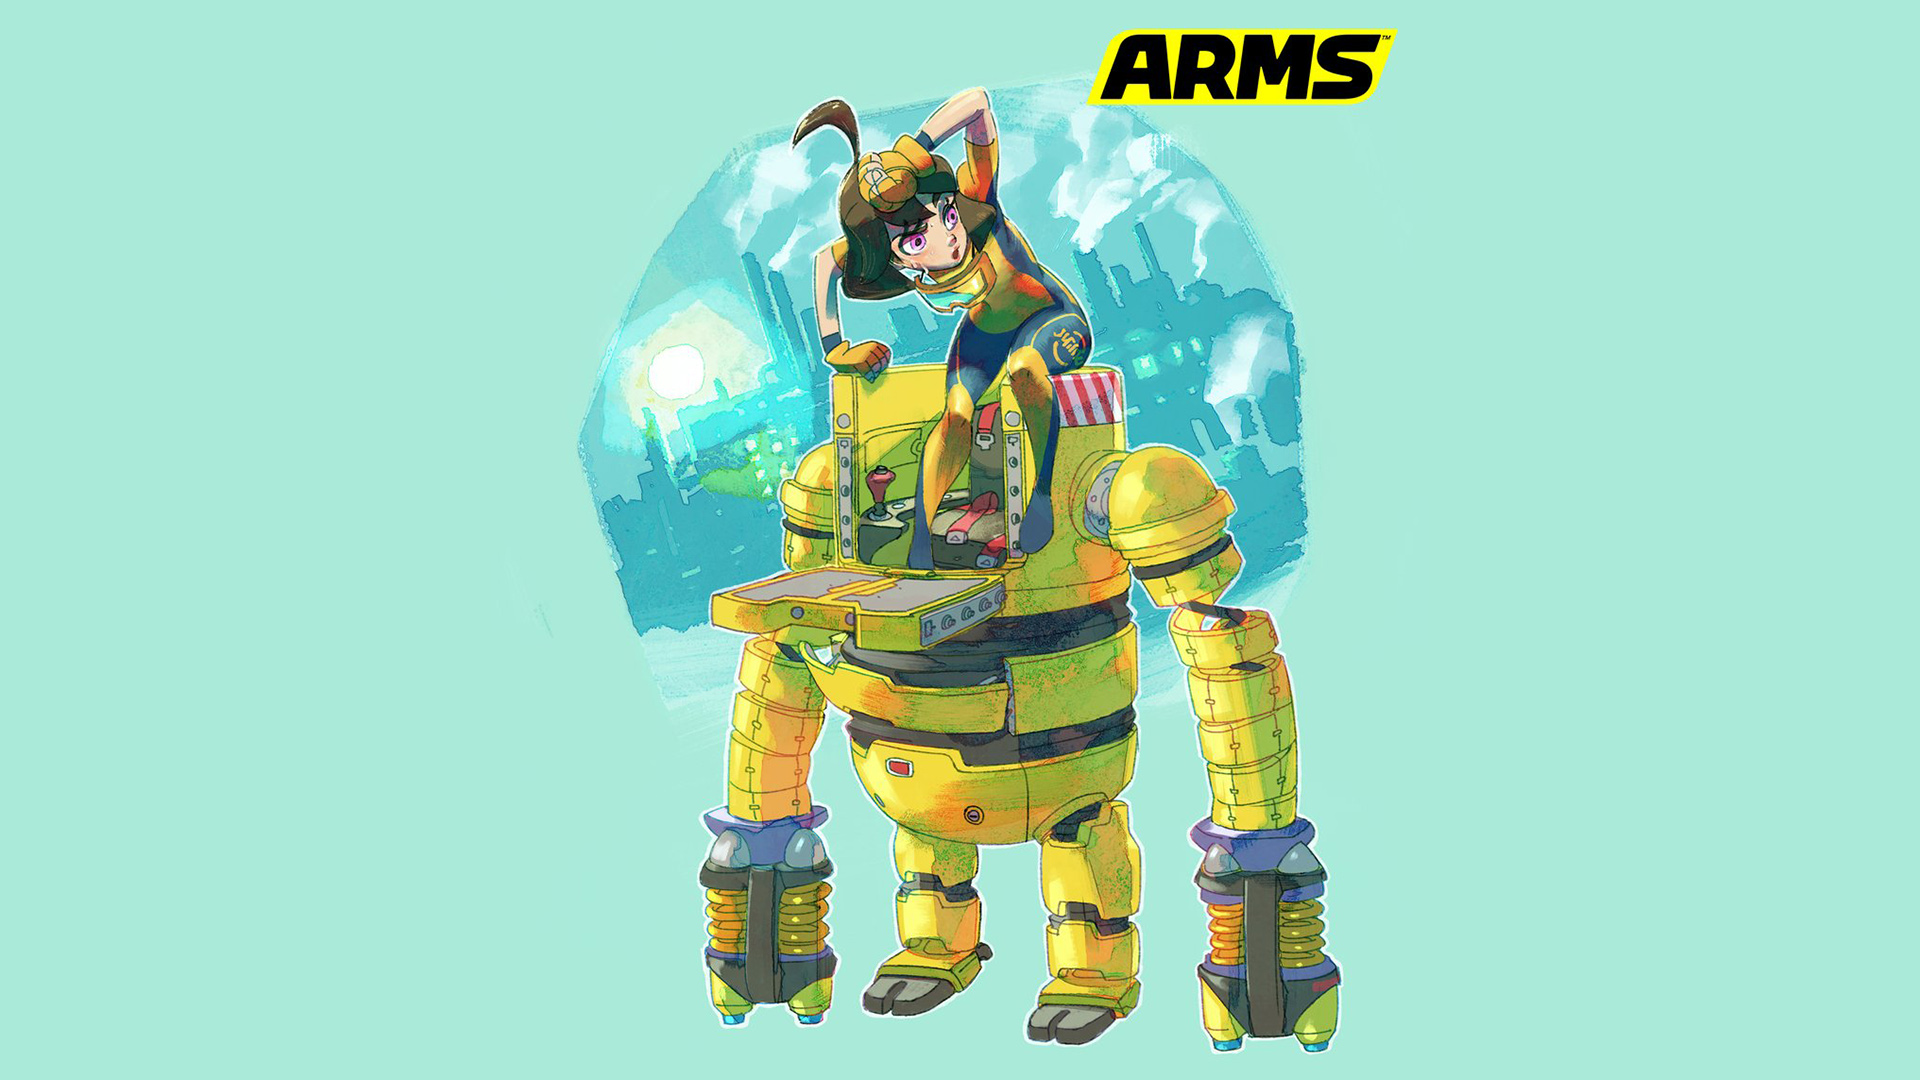 Nintendo details the backstory of ARMS Mechanica